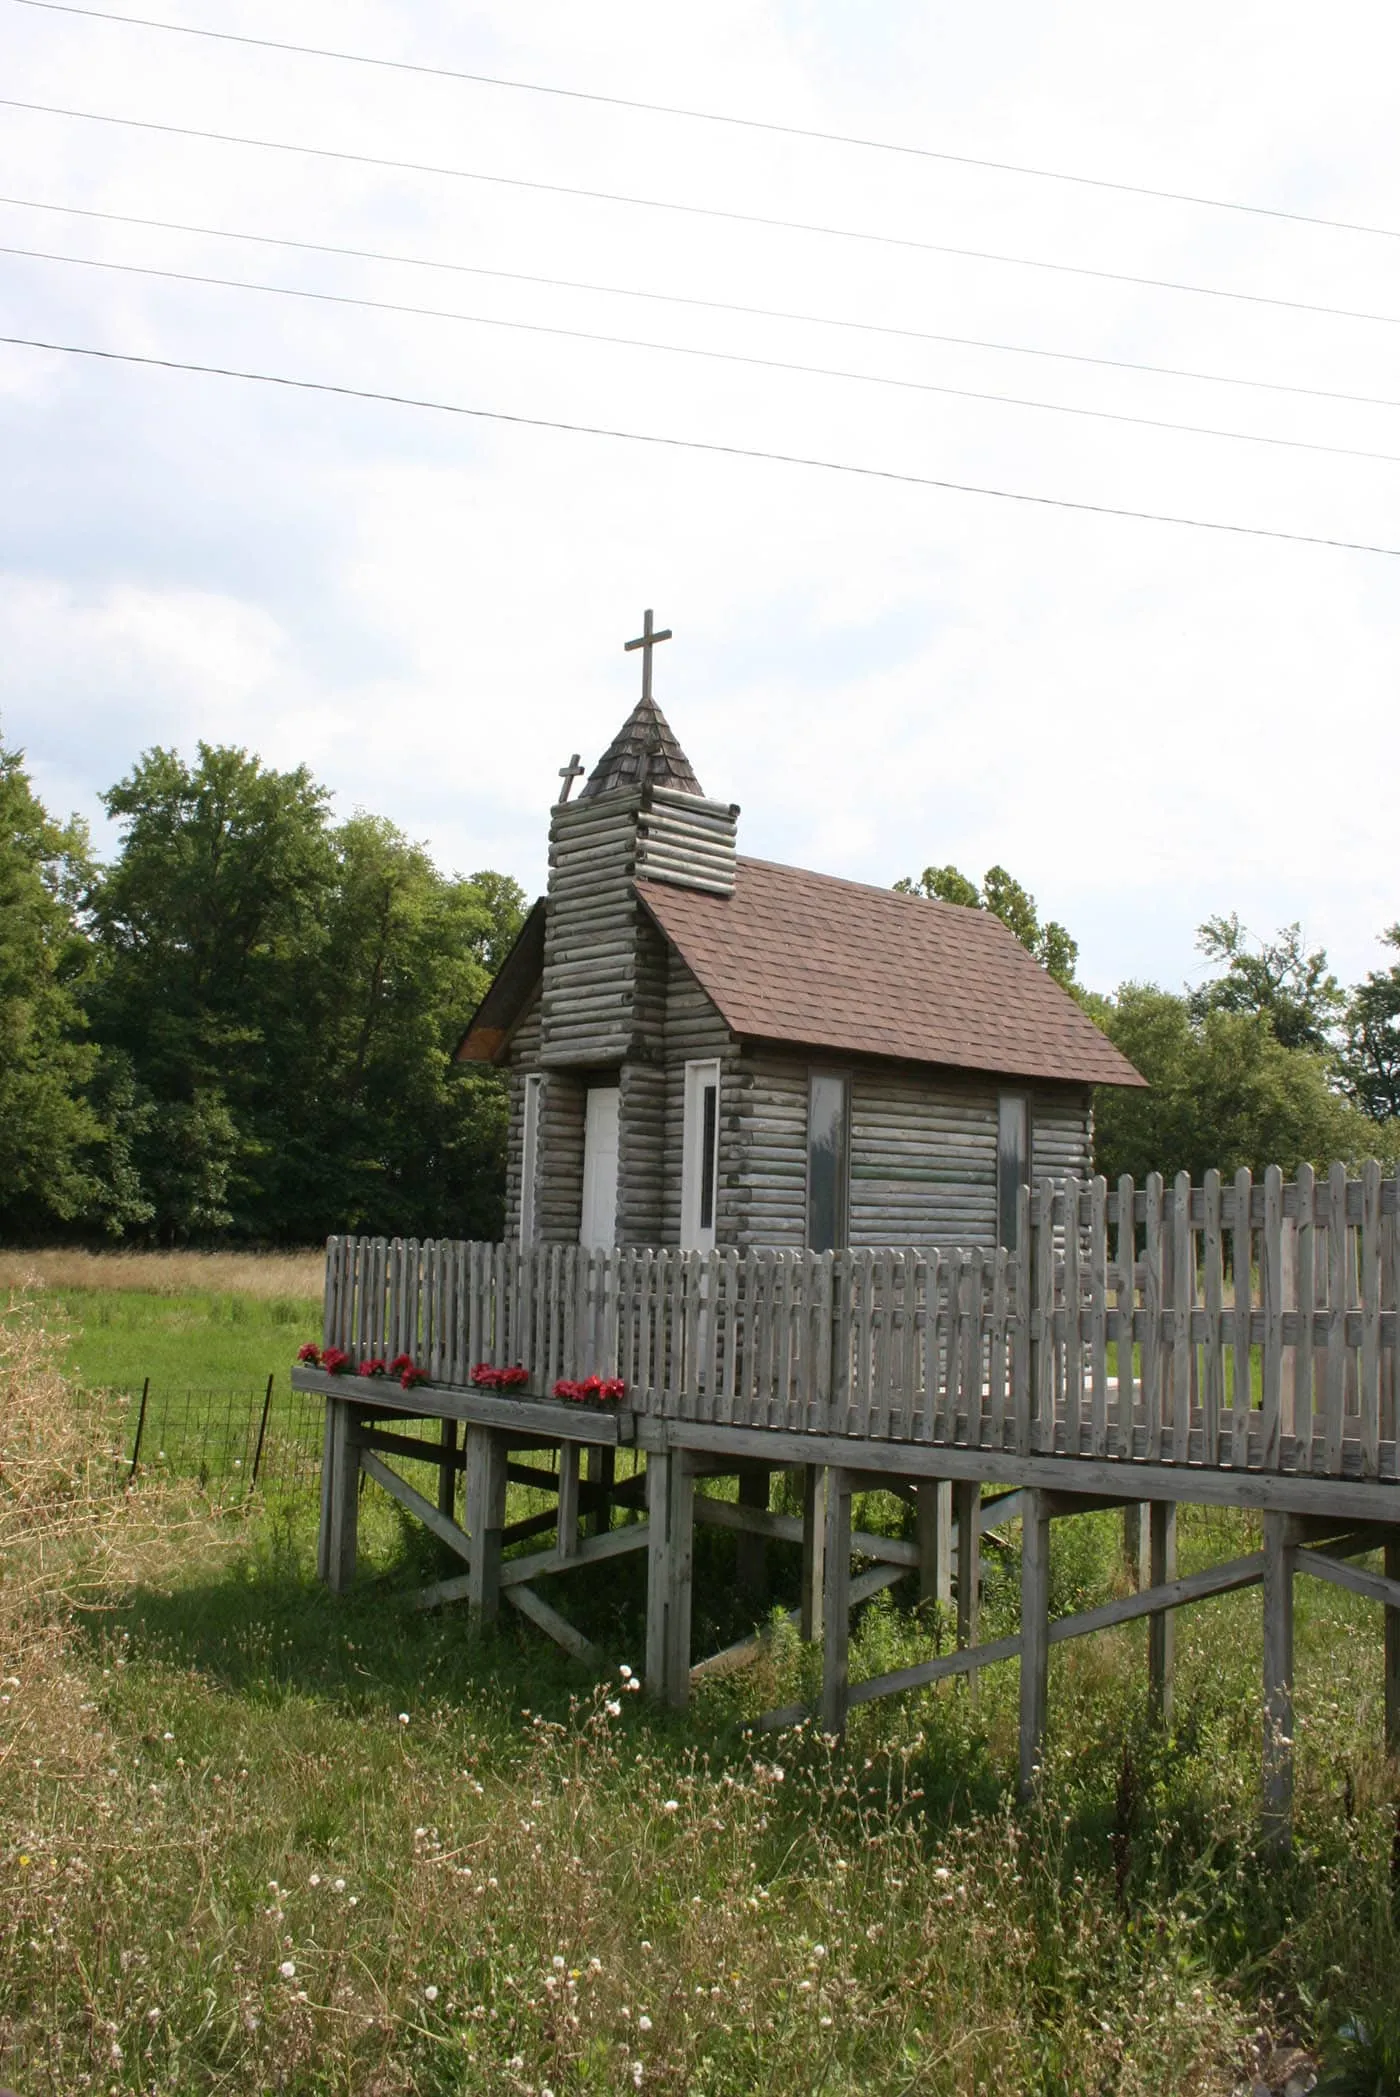 The Traveler's Chapel - a tiny church in Nashville, Illinois